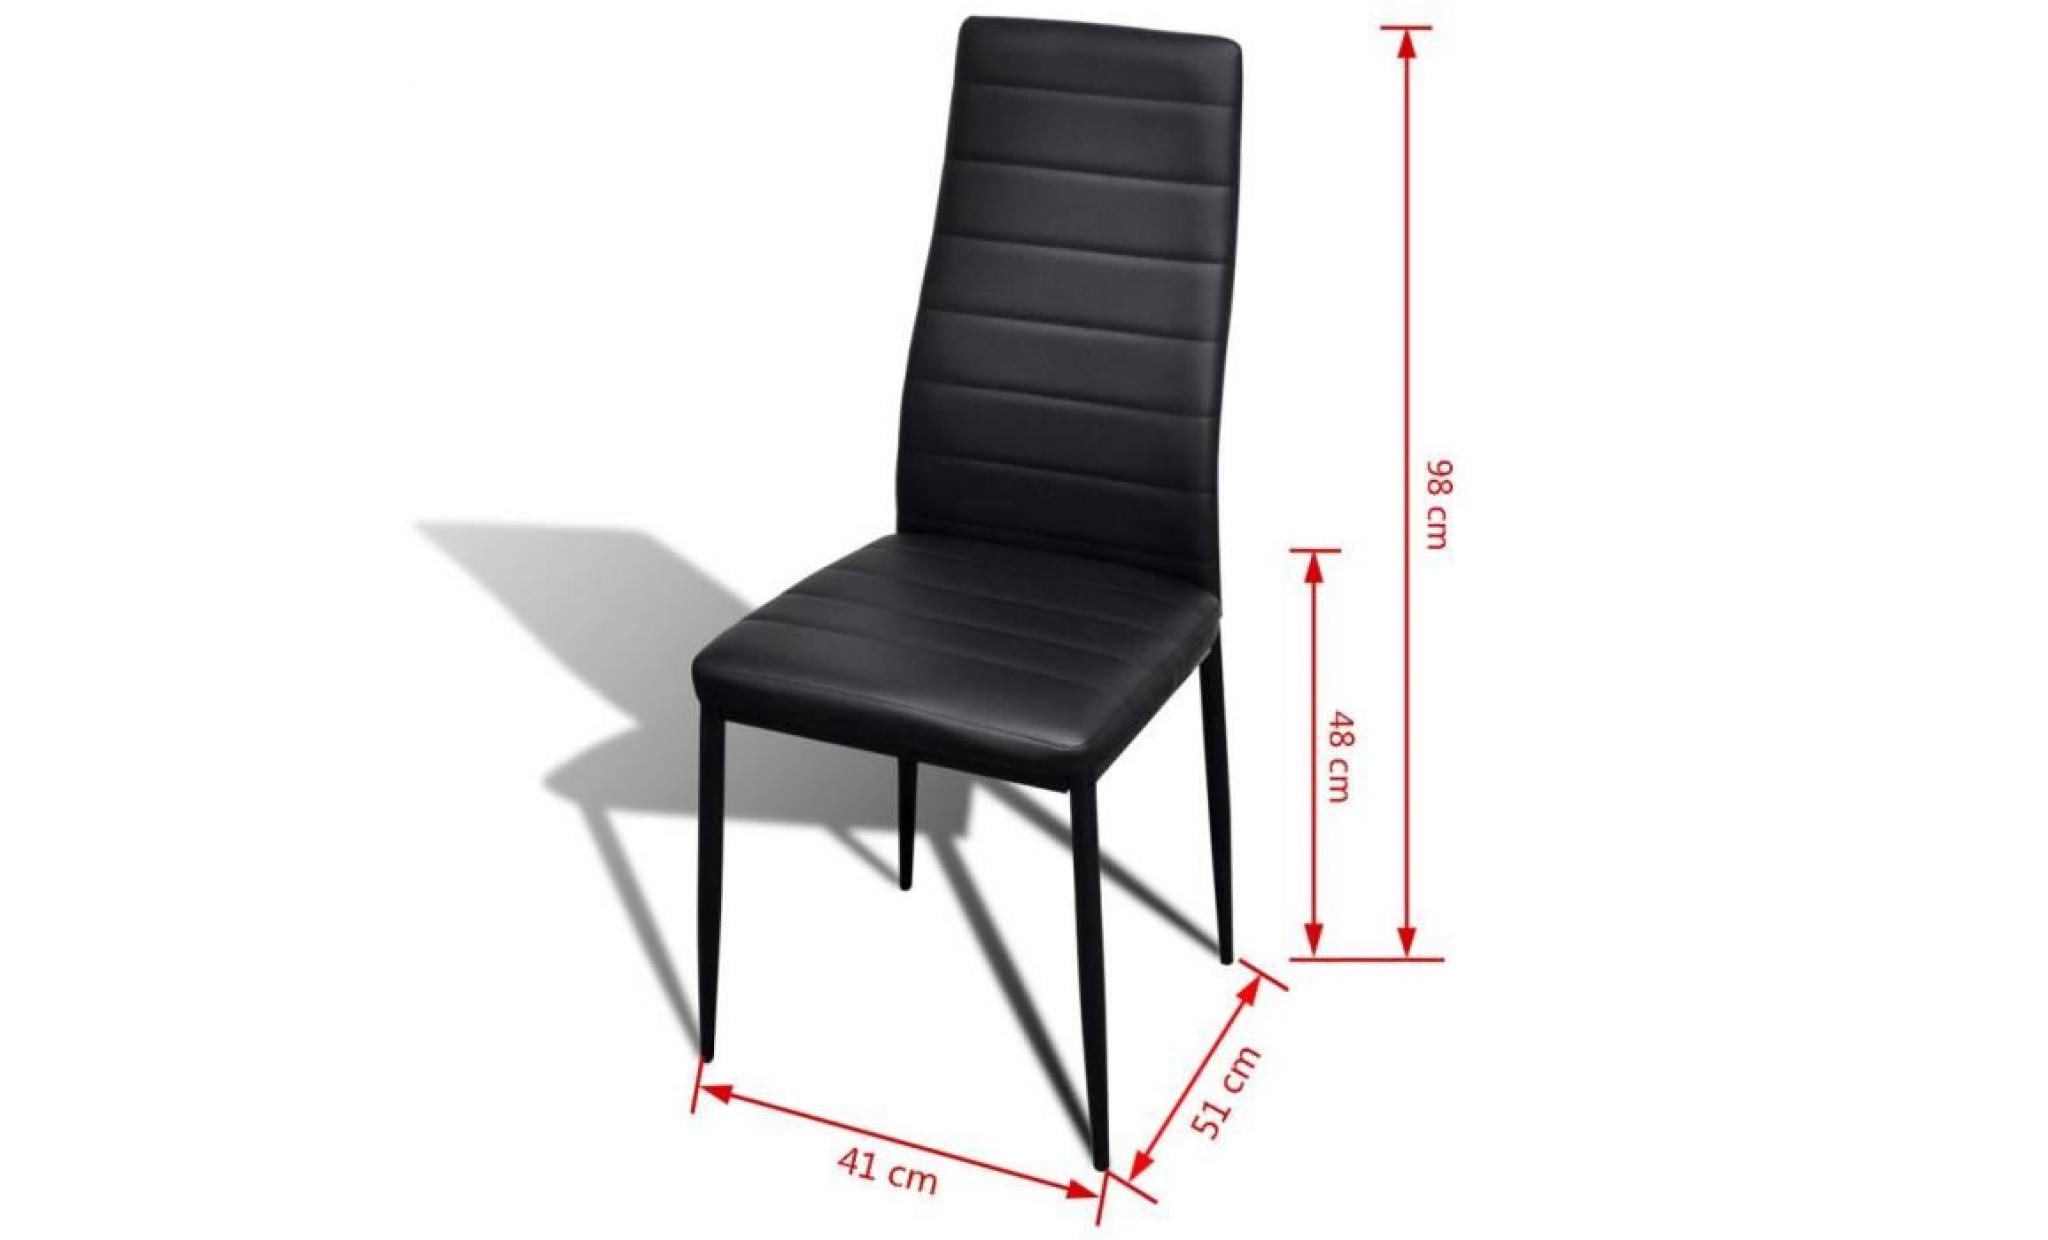 lot de 4 pcs41 x 51 x 98 cm chaises de salle à manger   style contemporain scandinave chaise cuisine design fin noir pas cher